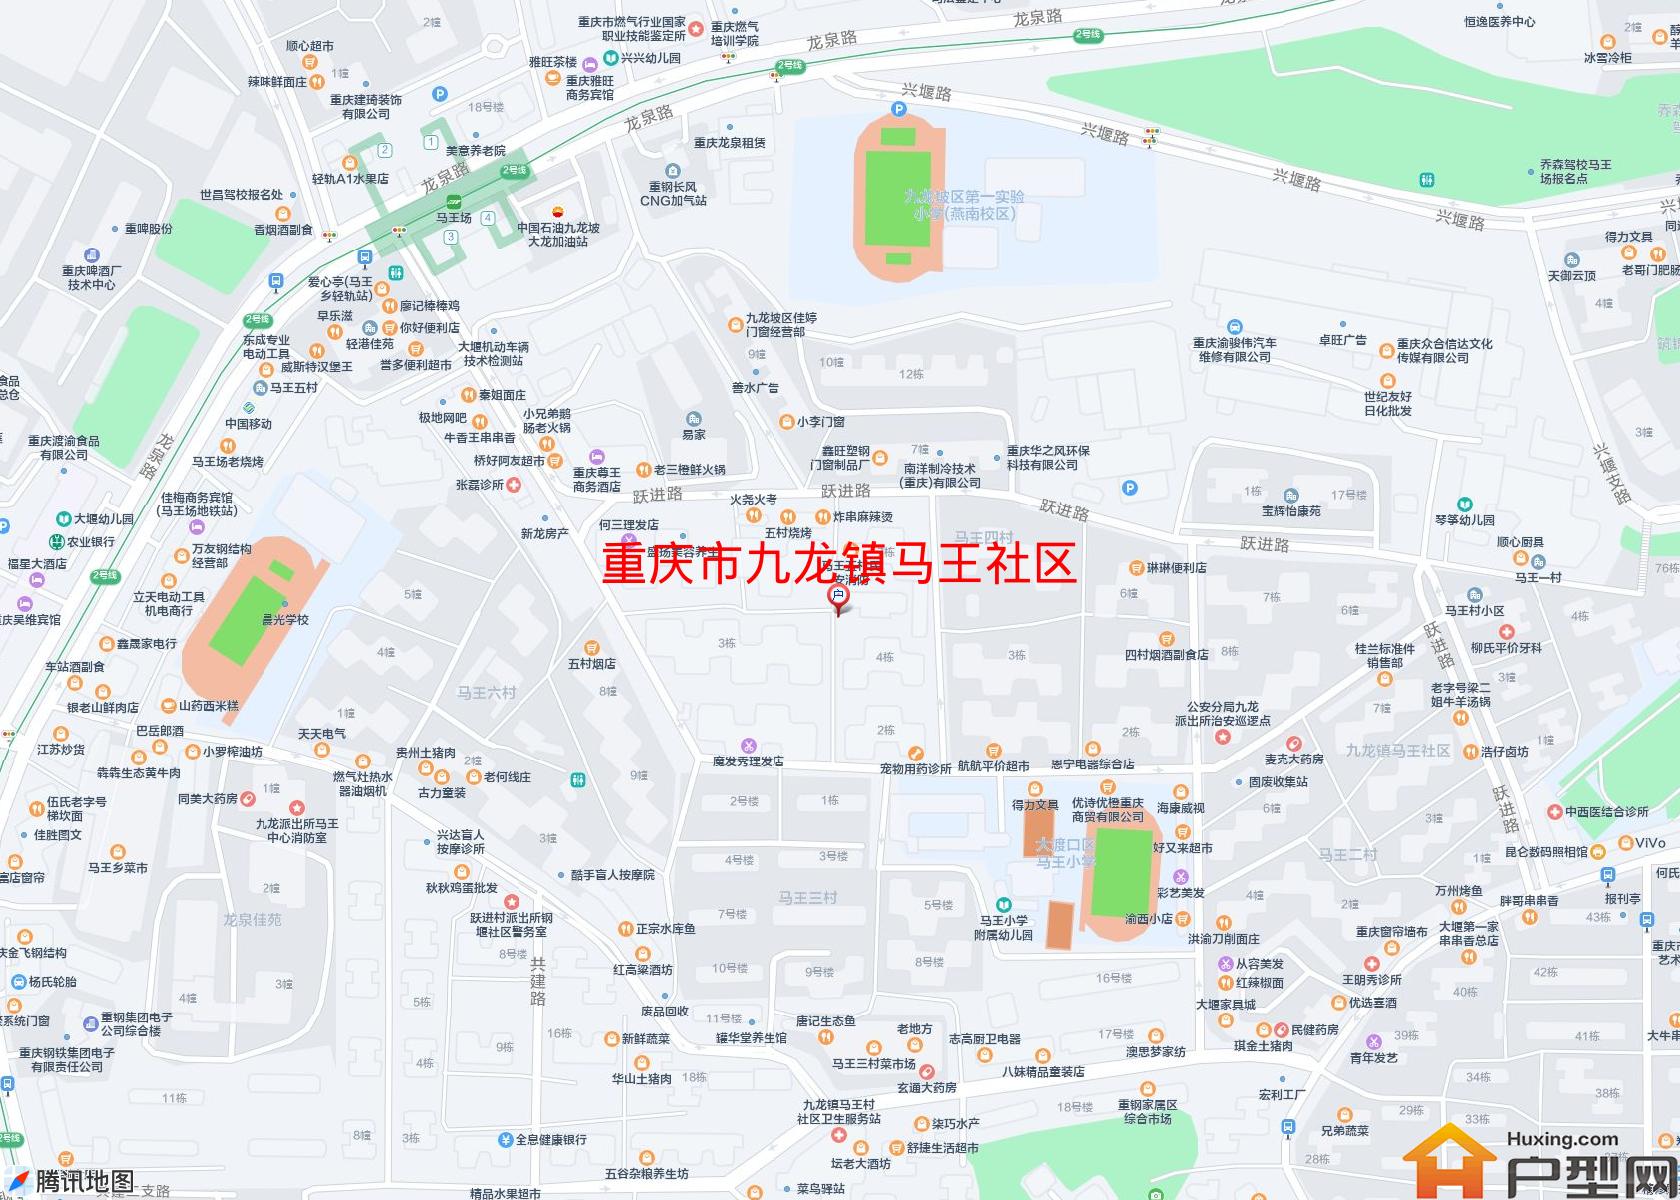 九龙镇马王社区小区 - 户型网